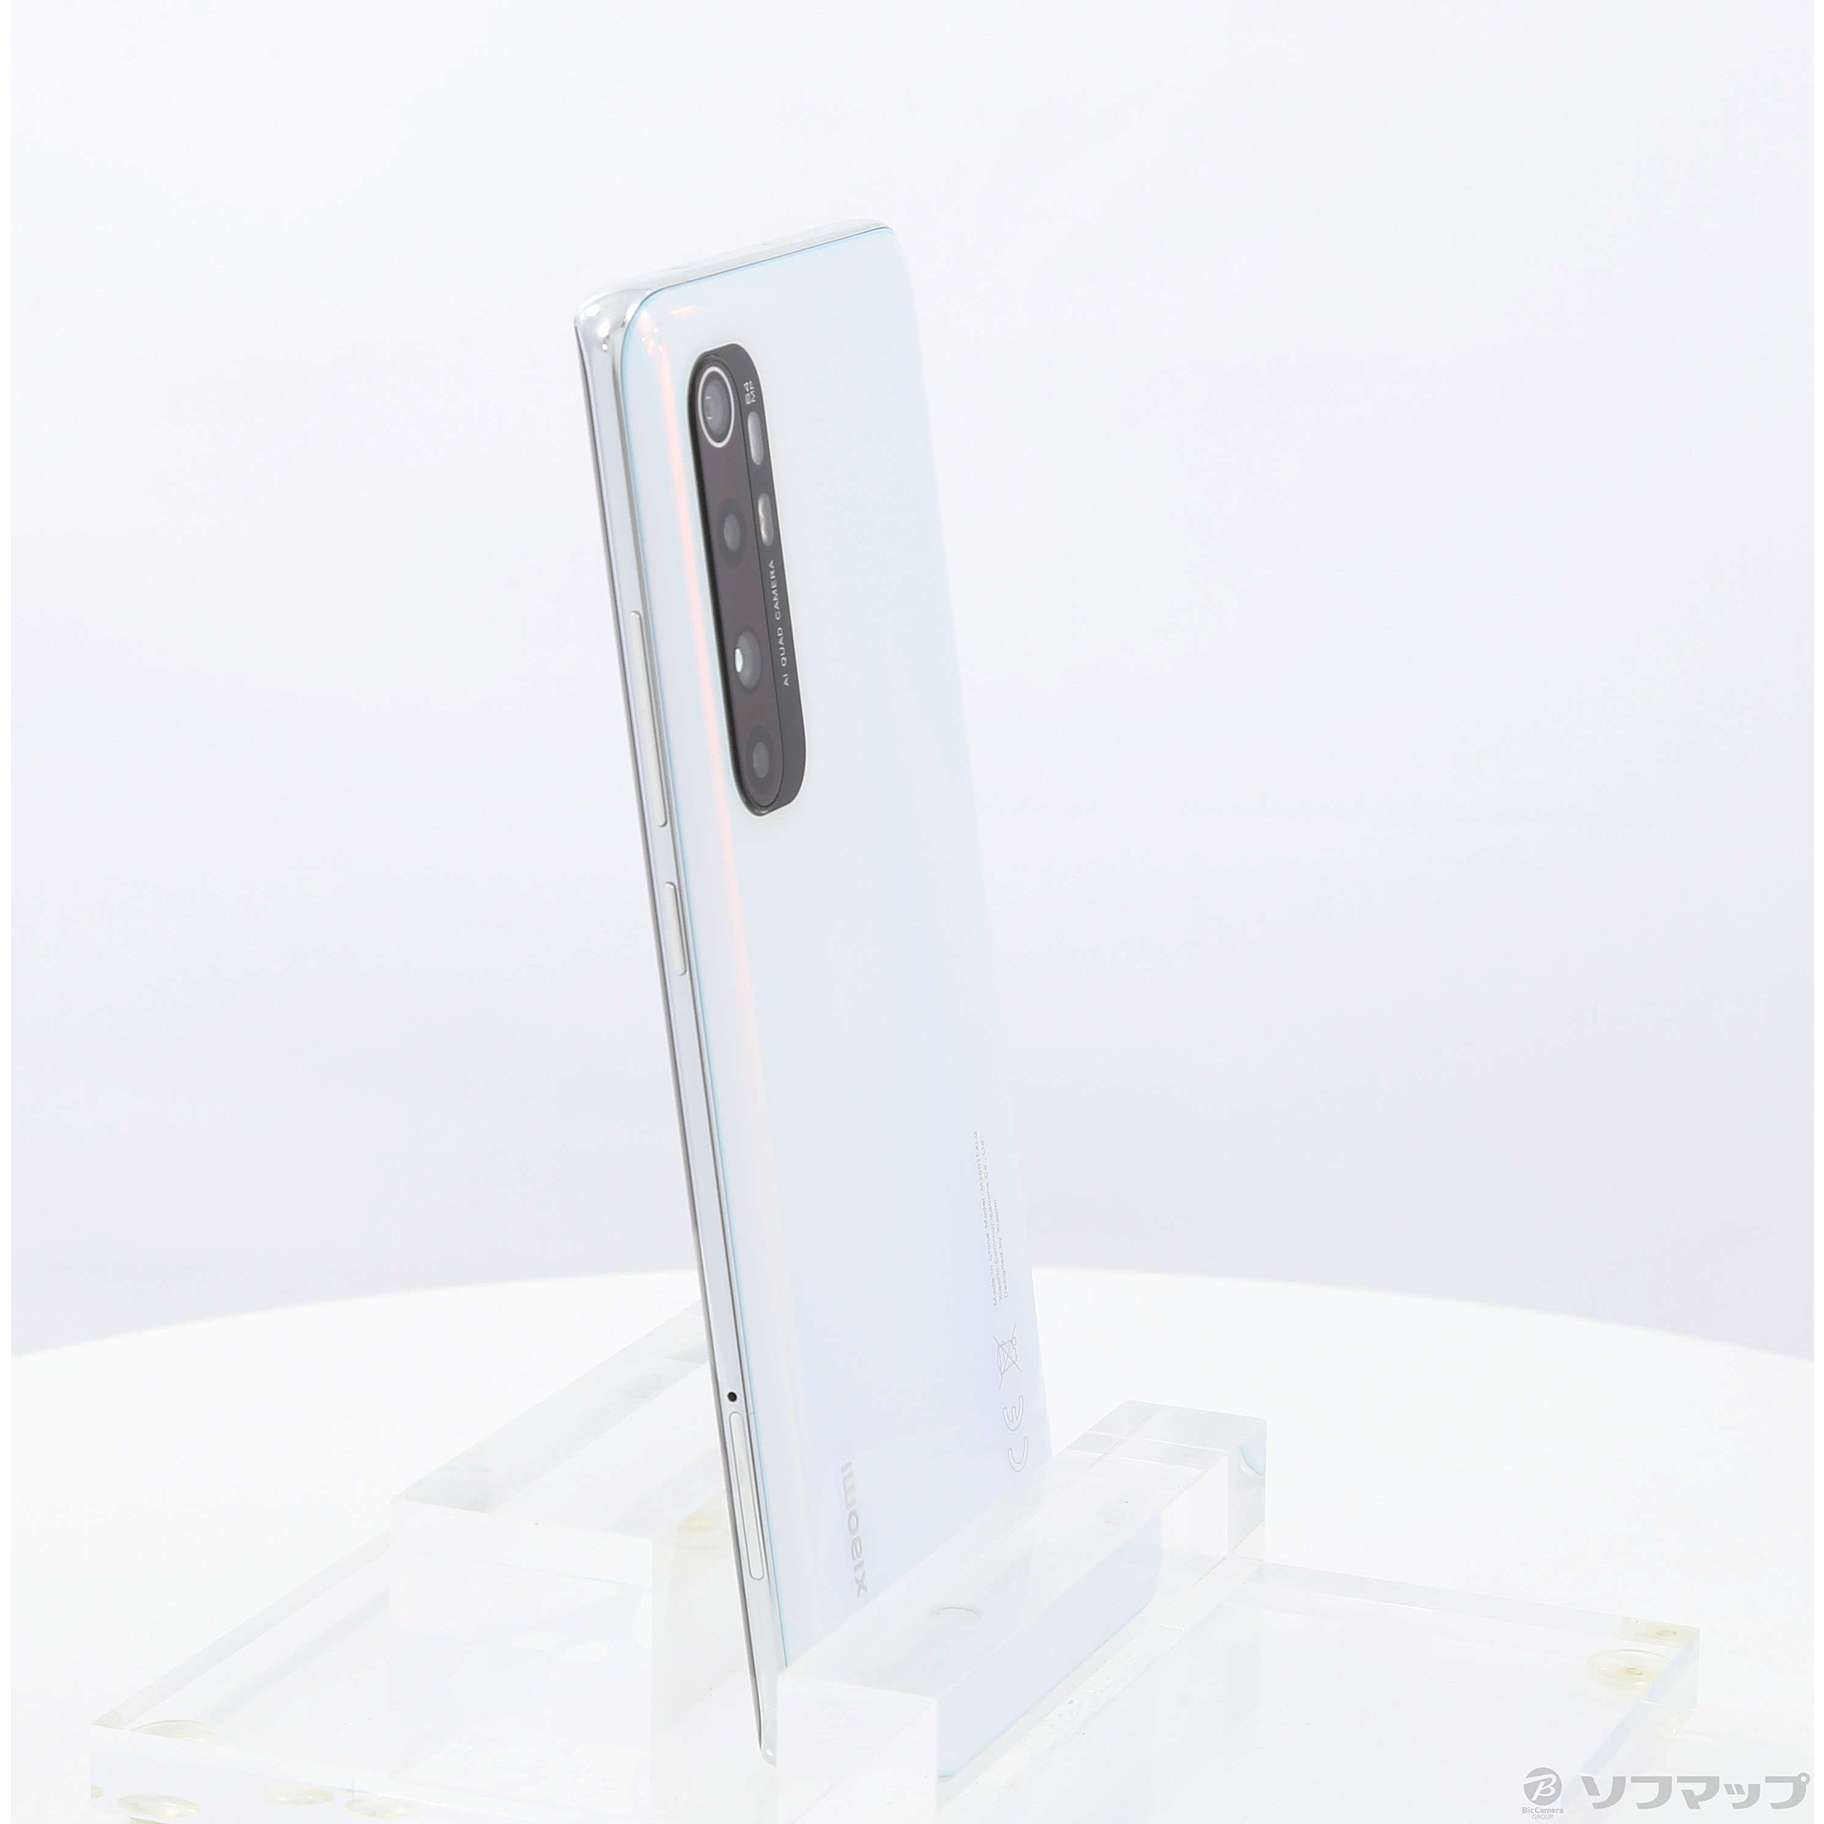 セール対象品 Mi Note 10 Lite 64GB グレイシャーホワイト MINOTE10LITE6+1 SIMフリー